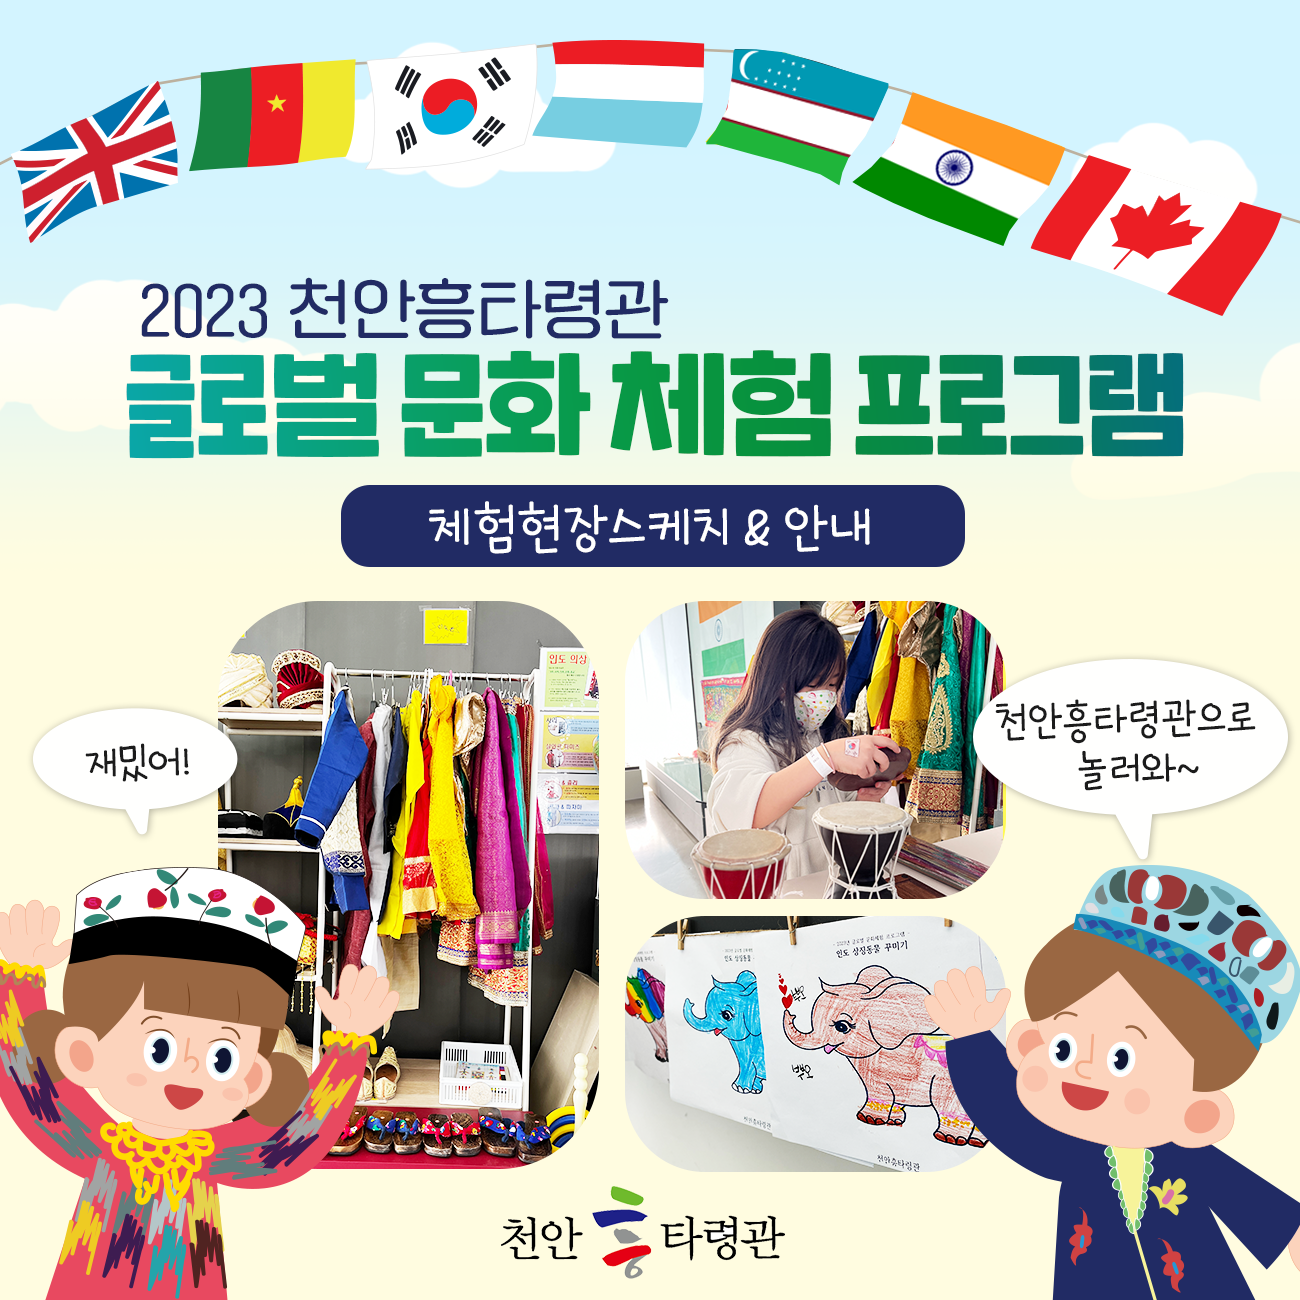 2023년 천안흥타령관 글로벌 문화 체험프로그램 운영